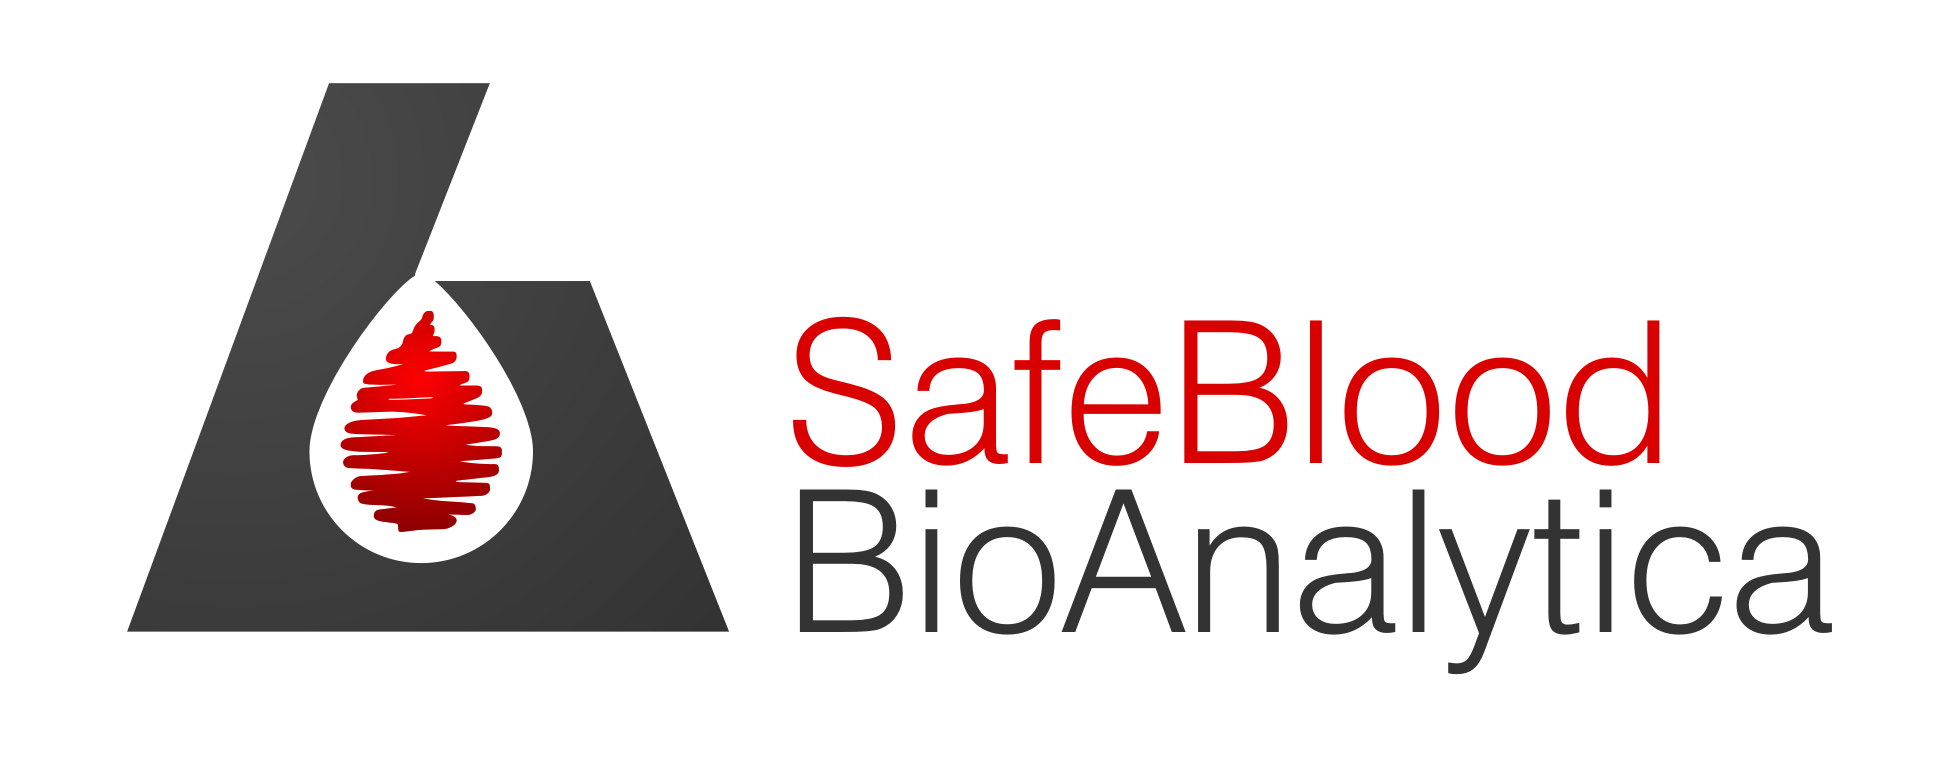 SafeBlood BioAnalytica